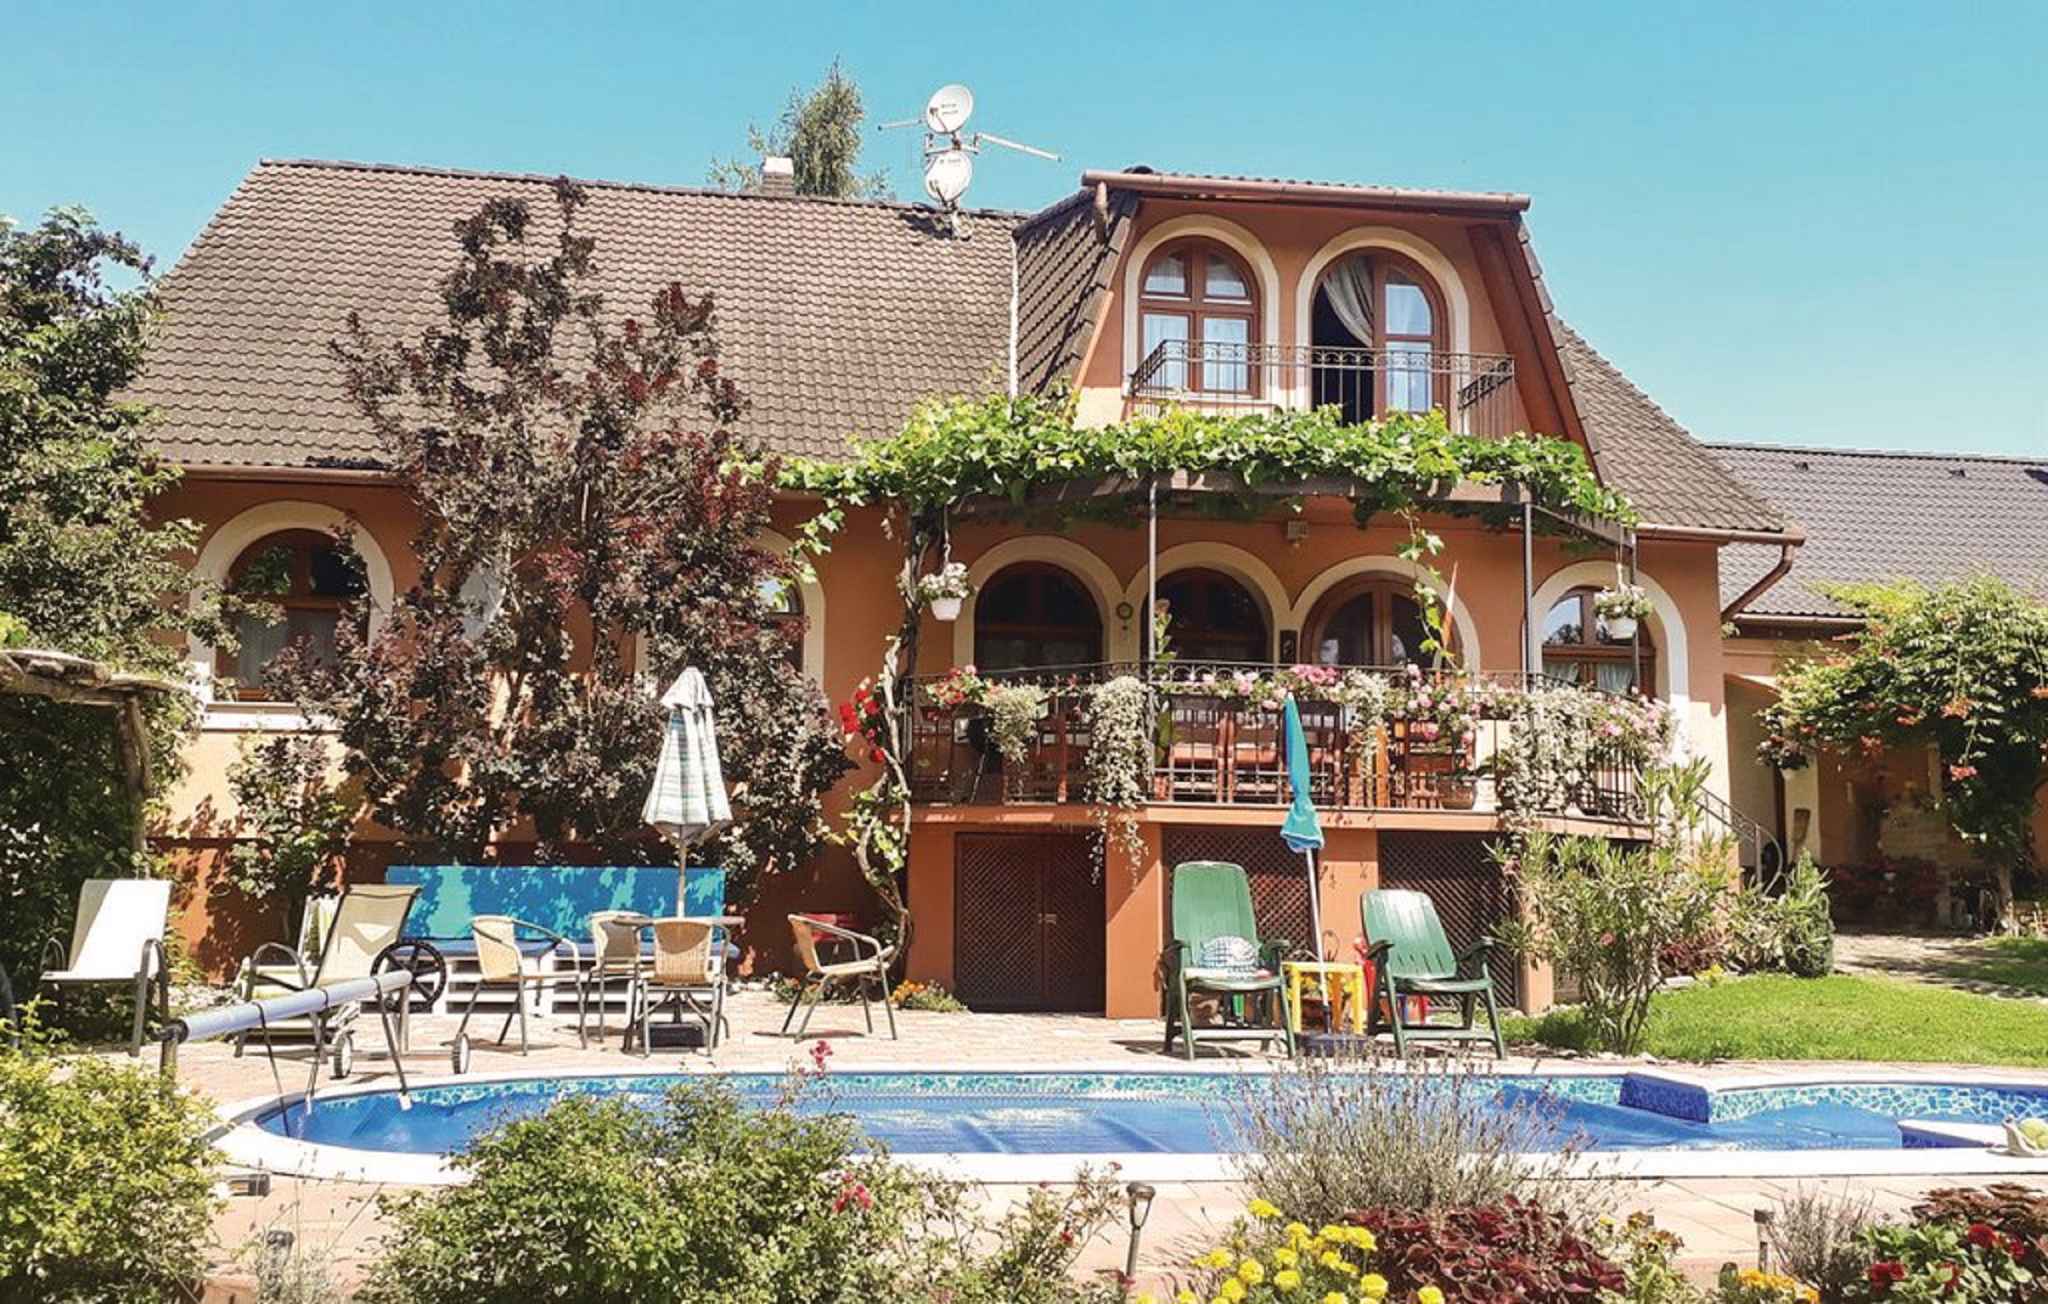 Ferienhaus mit Pool und Planschbecken Ferienhaus in Ungarn